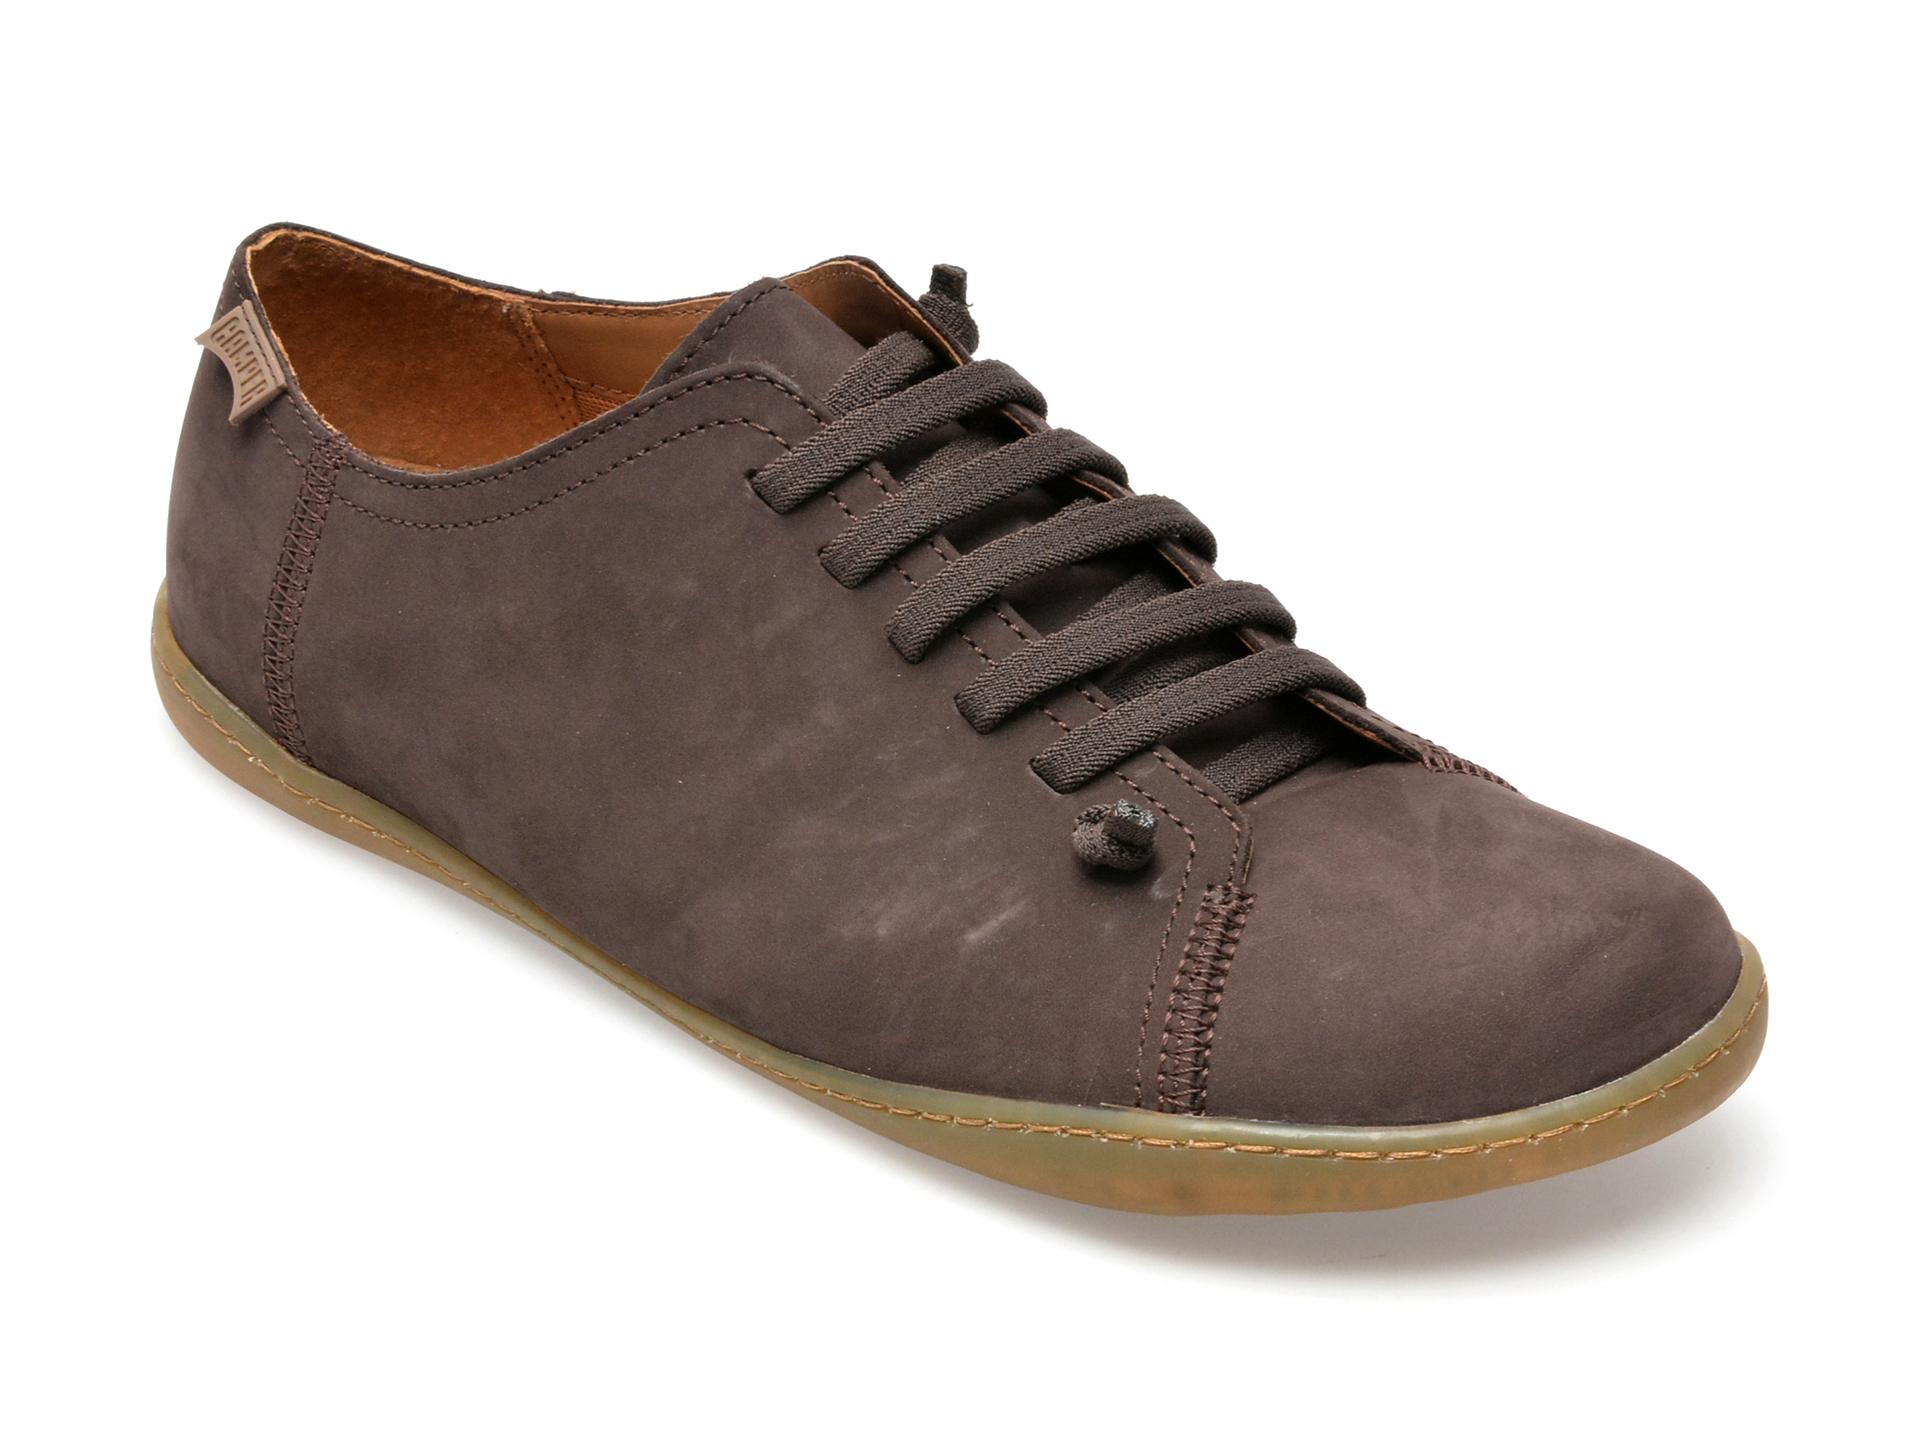 Pantofi CAMPER maro, 17665, din piele naturala imagine reduceri black friday 2021 Camper